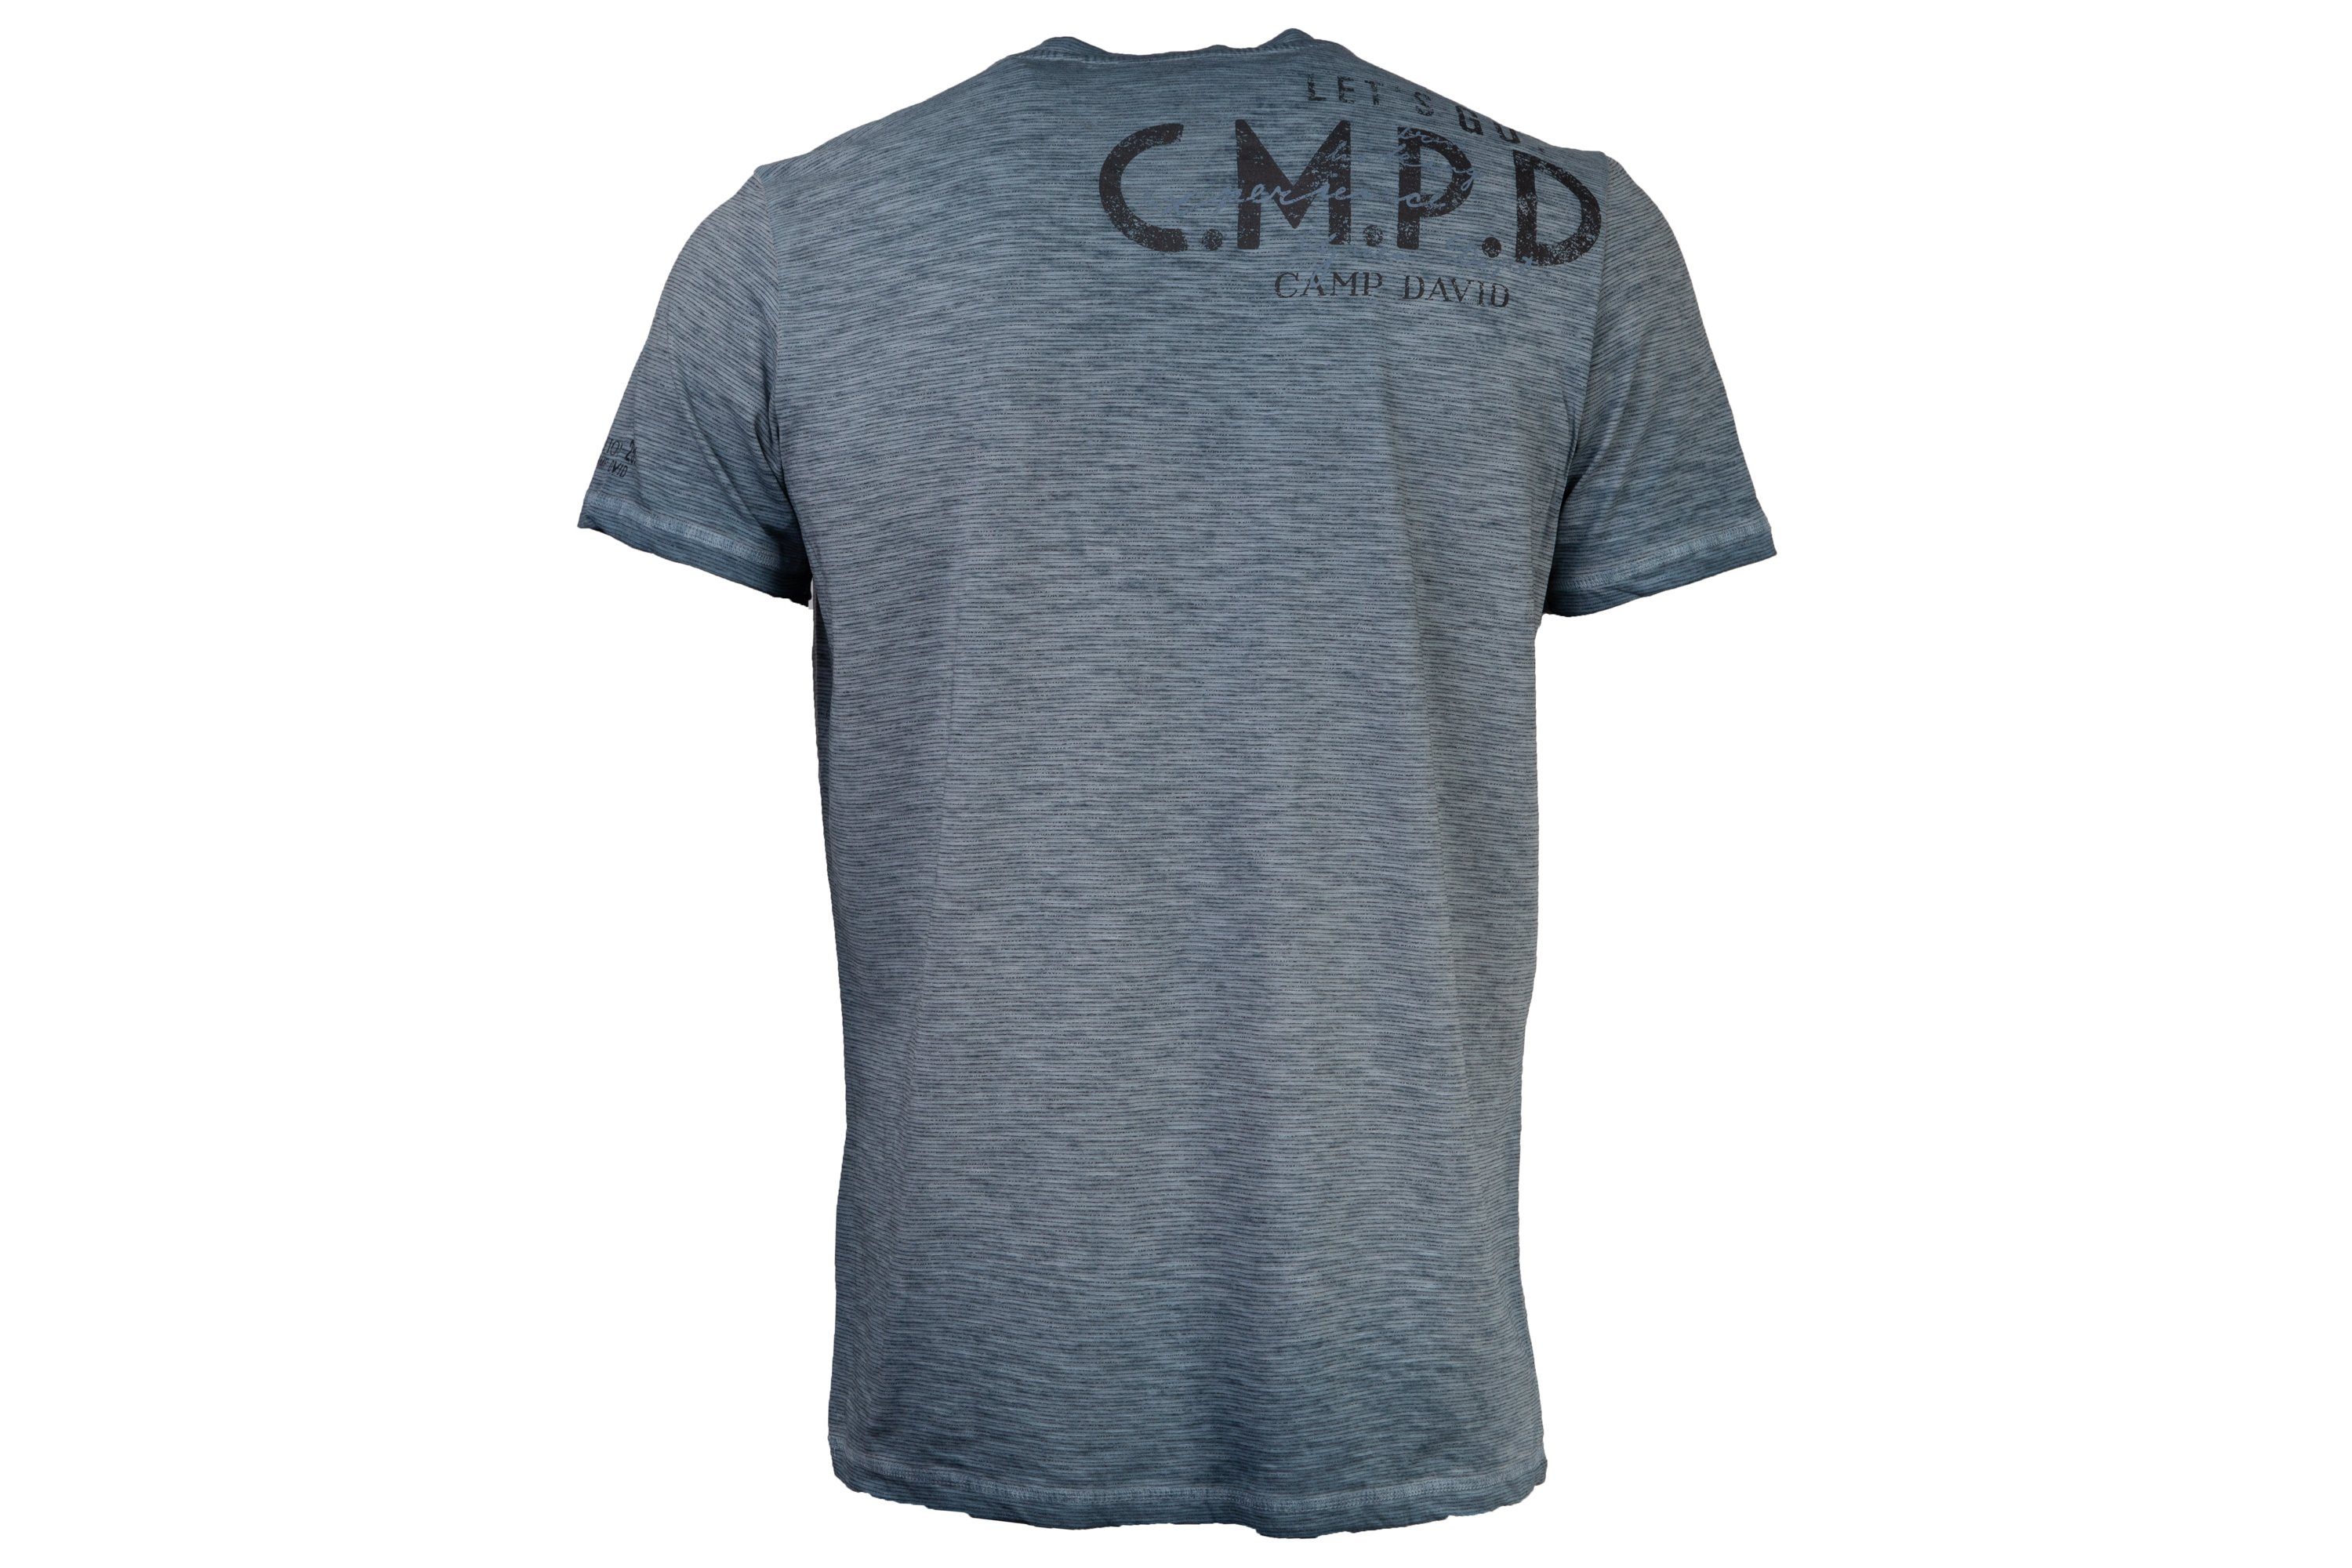 CAMP DAVID T-Shirt mit Schriftzügen